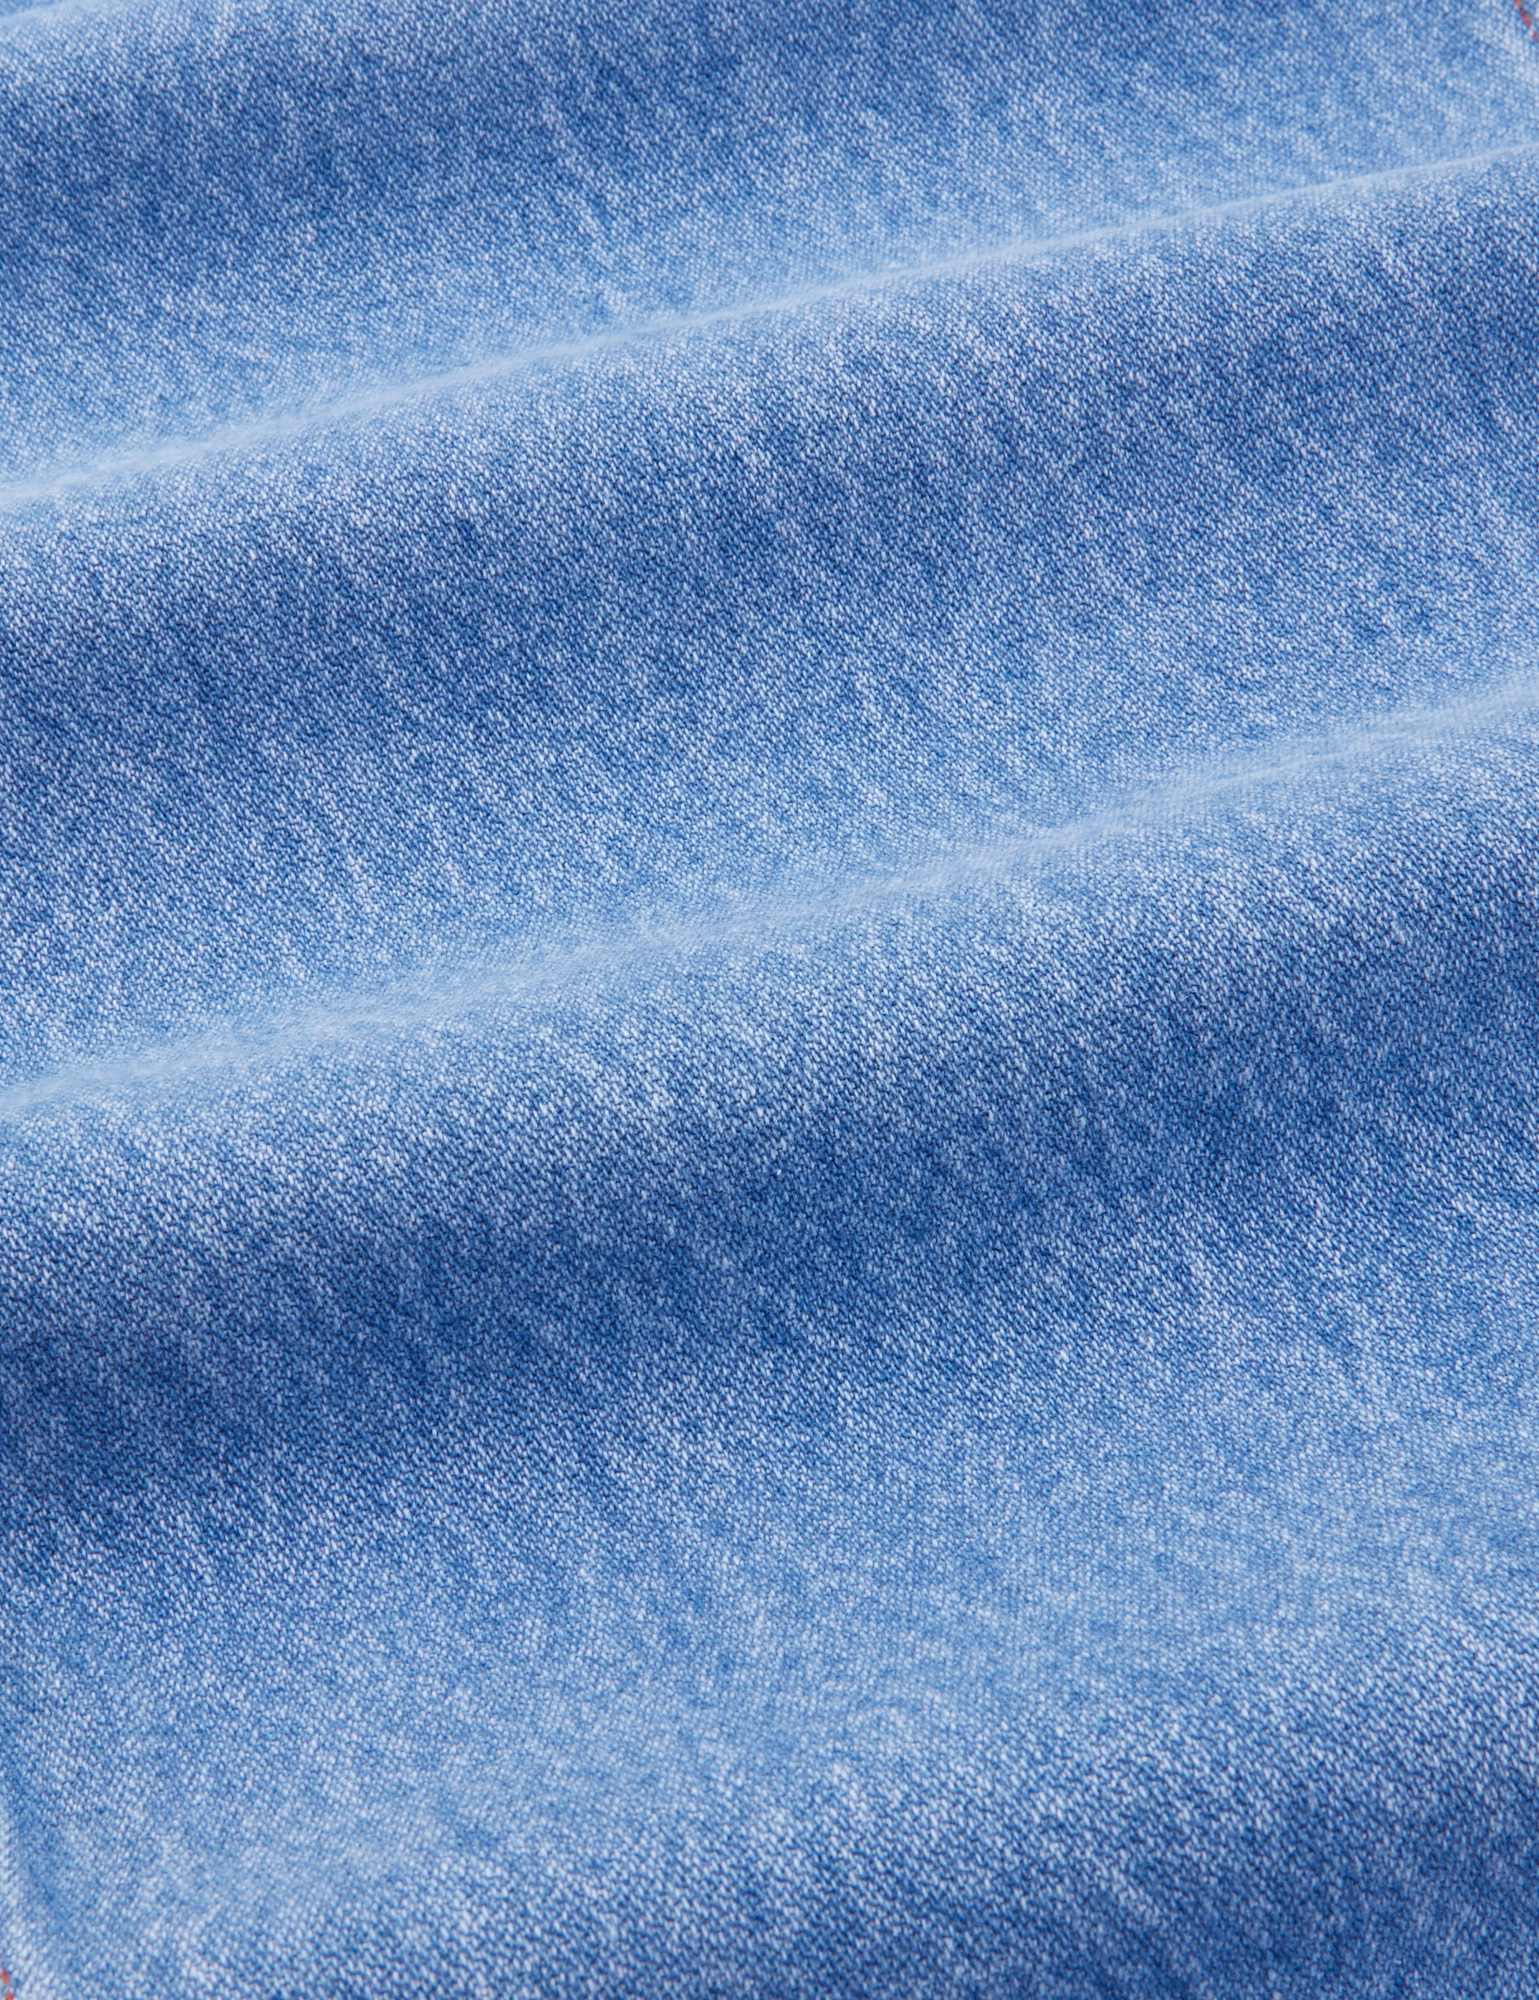 Indigo Denim Original Overalls in Light Wash fabric detail close up